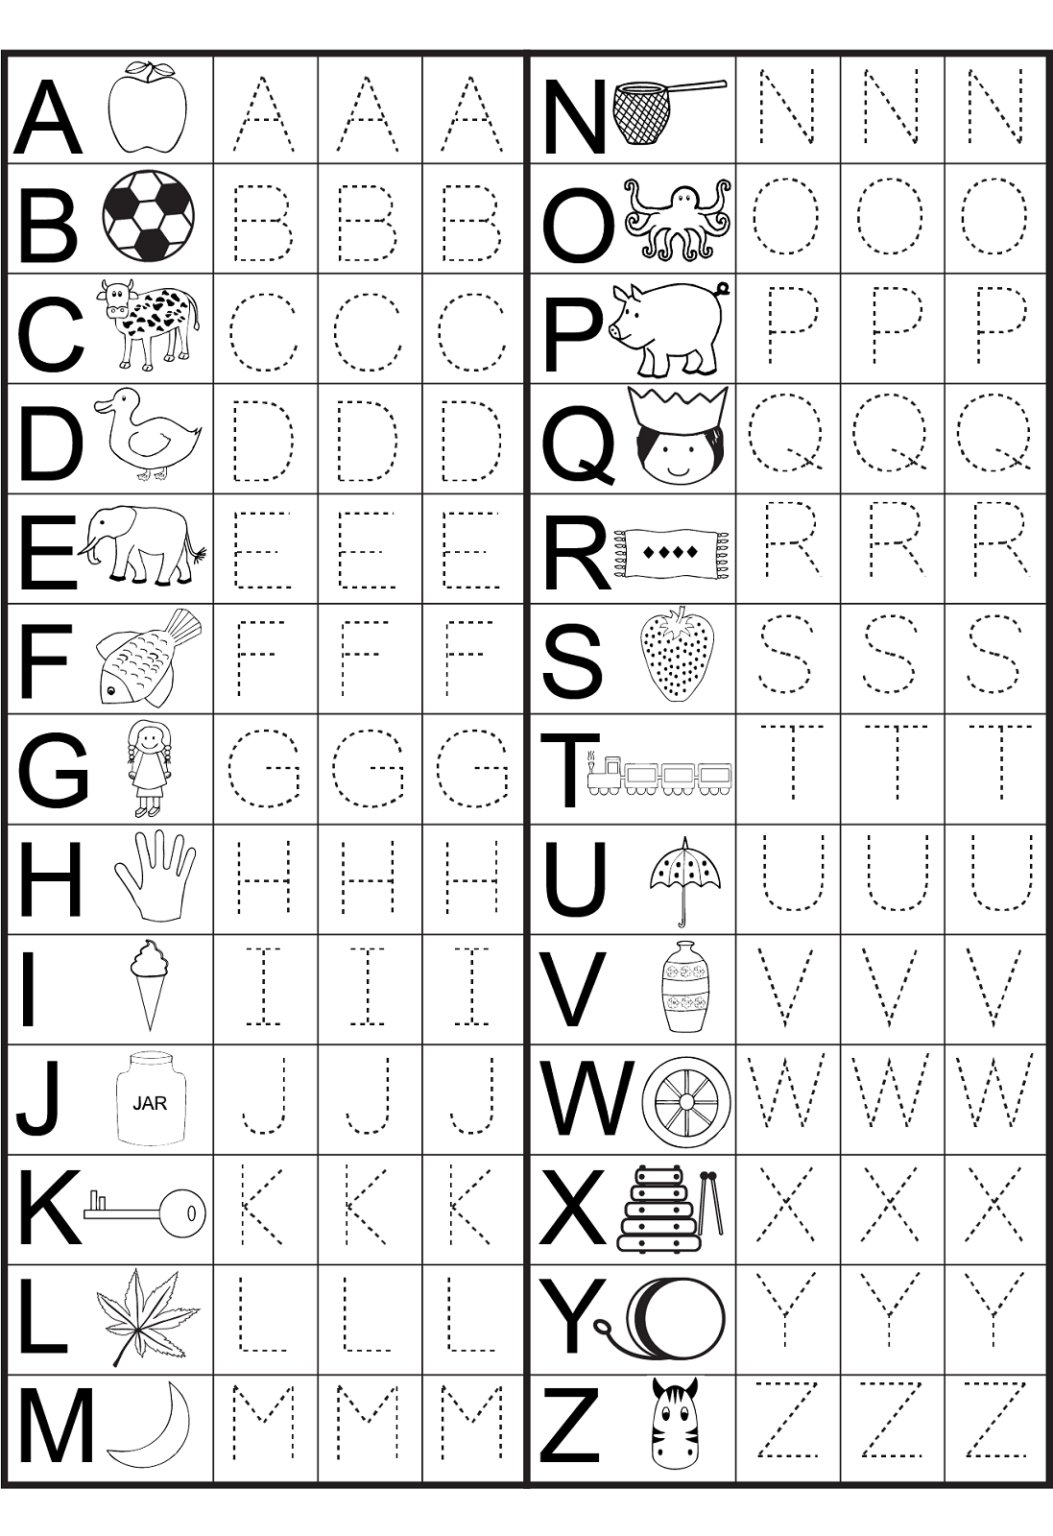 kindergarten-alphabet-worksheets-to-print-preschool-worksheets